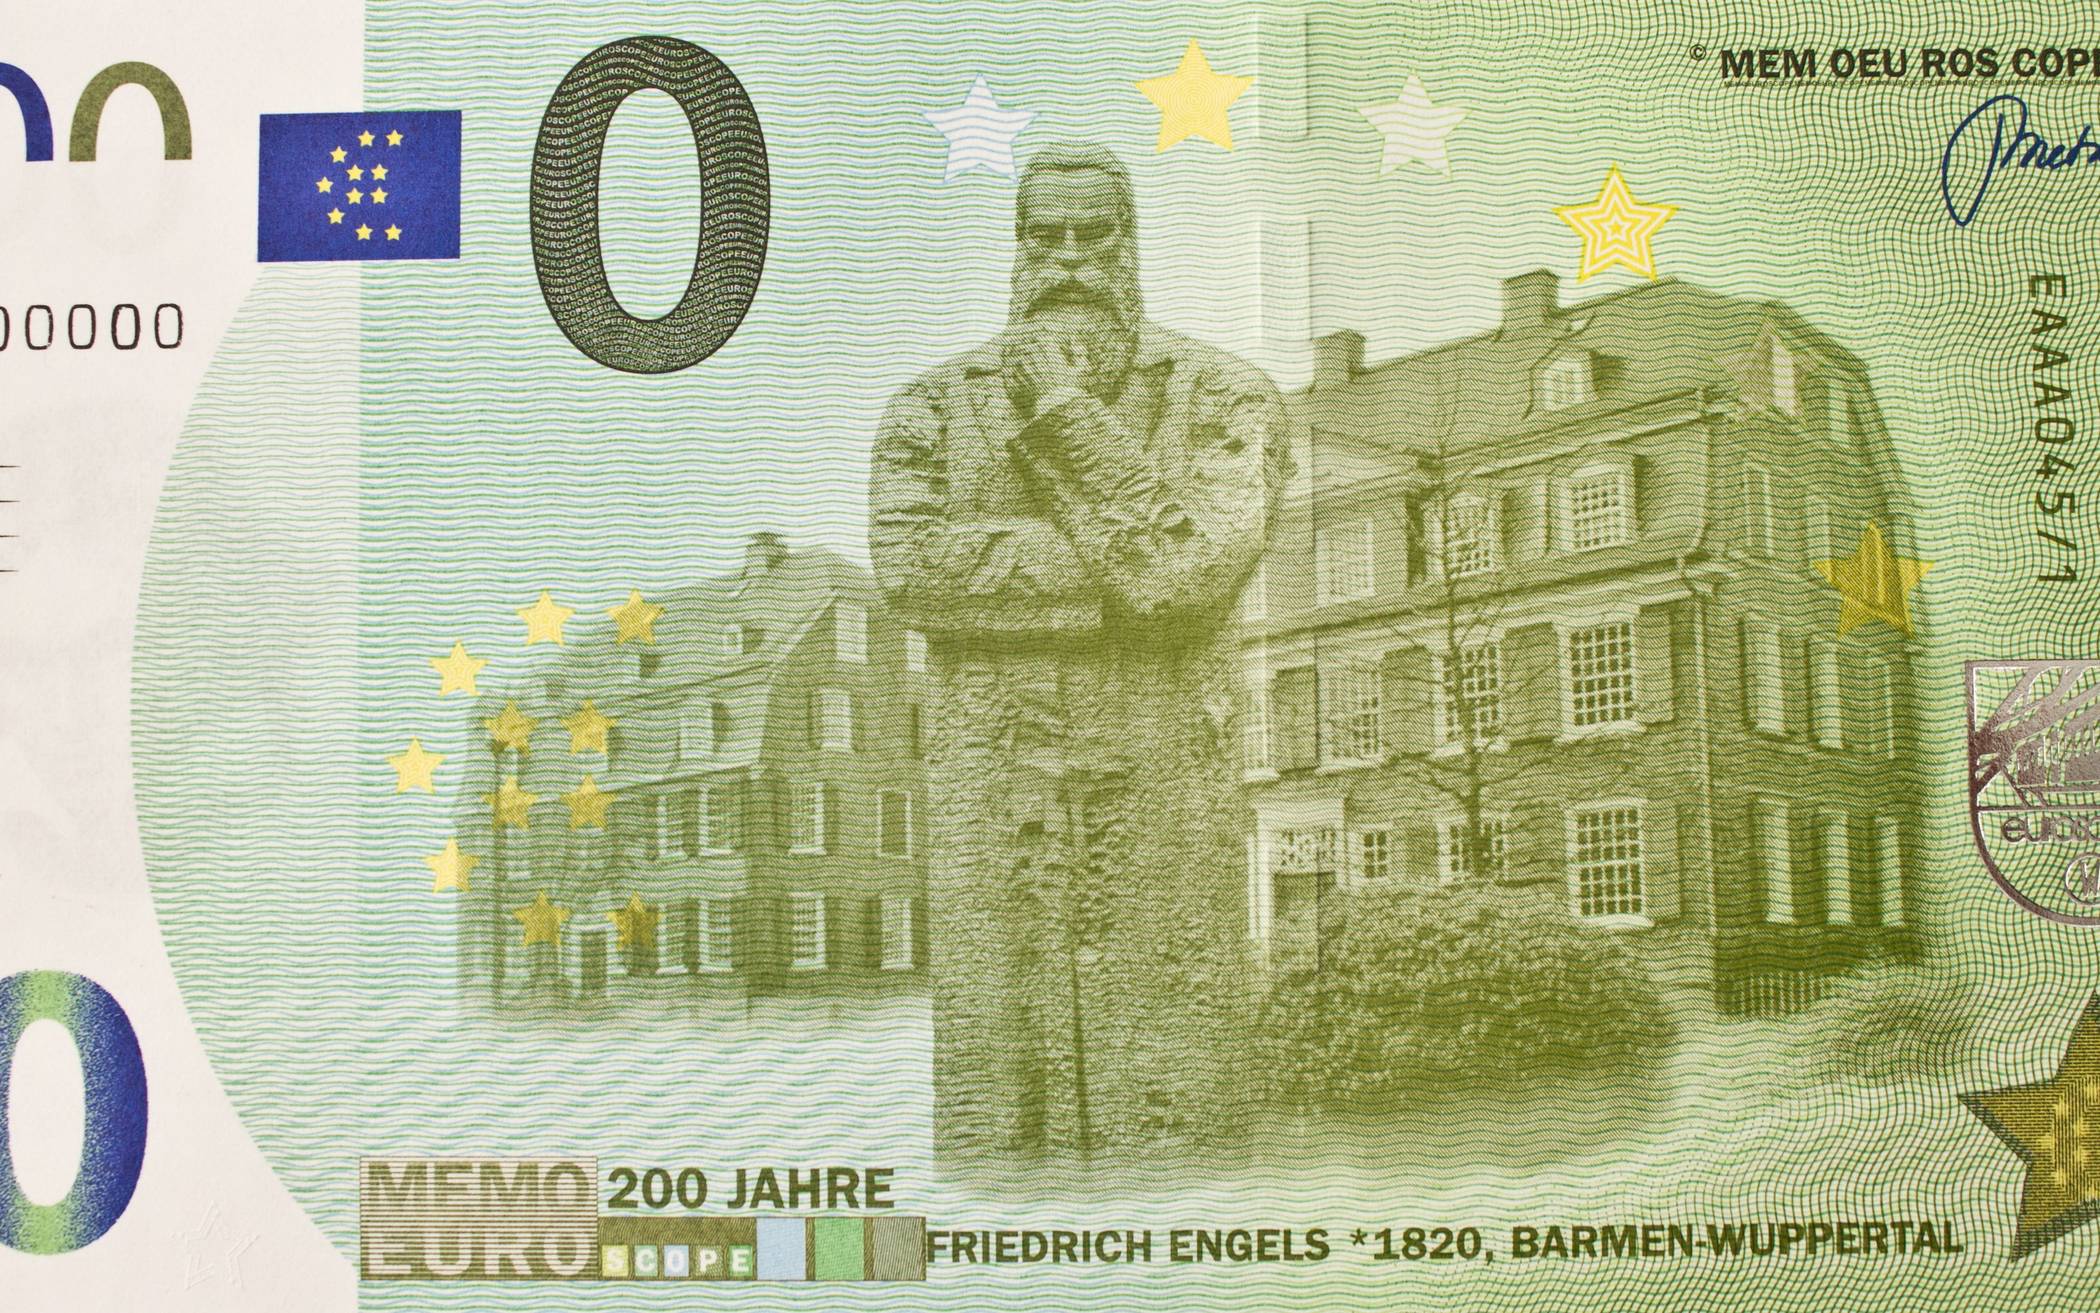 Friedrich Engels auf dem neuen 0-Euro-Schein